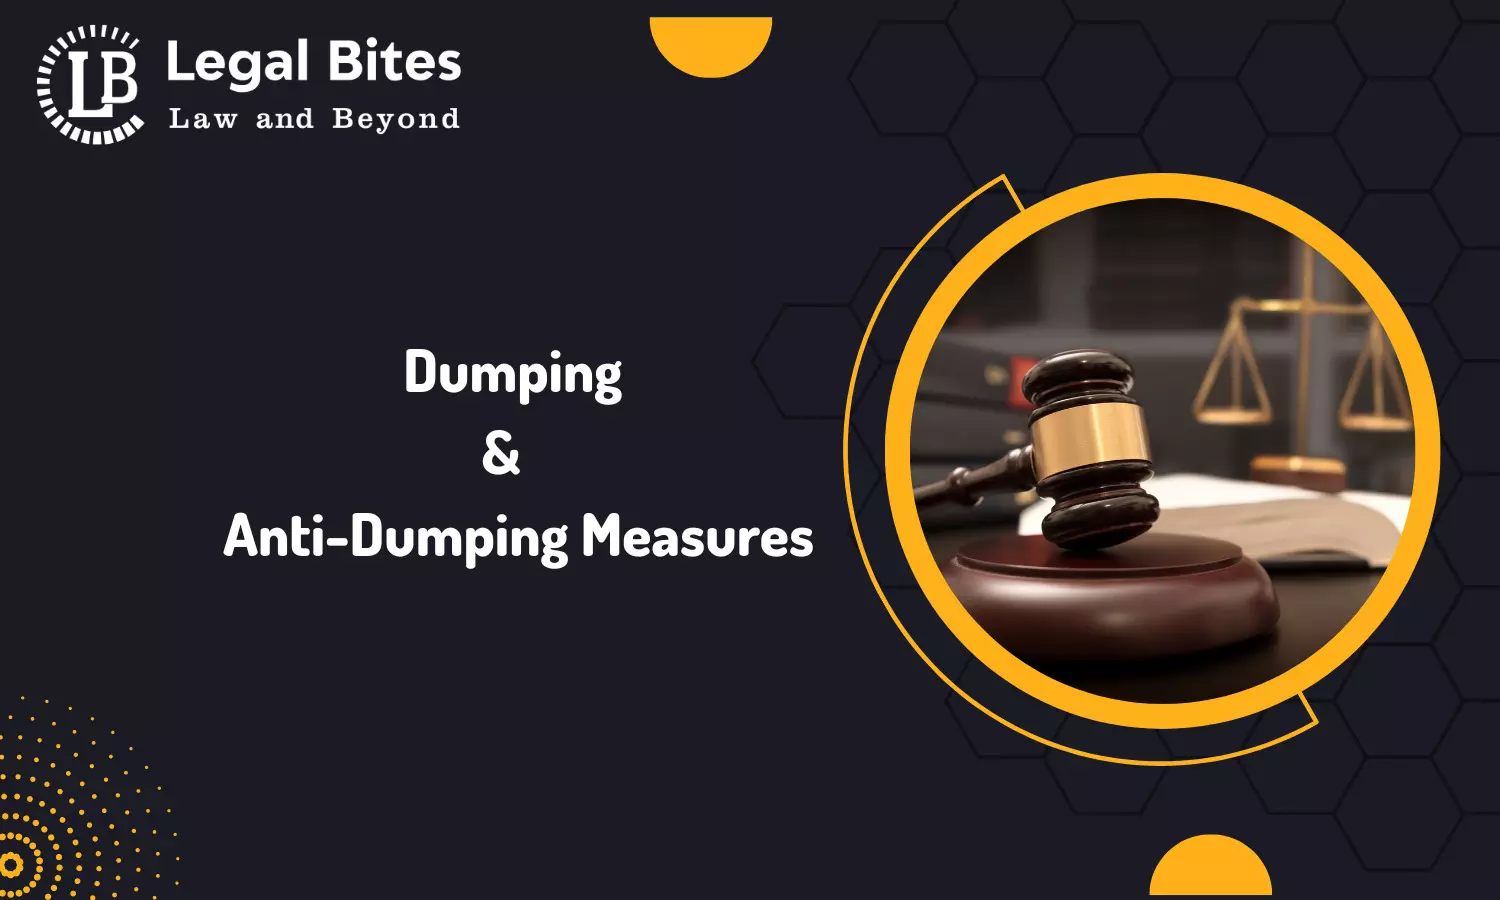 Dumping & Anti-Dumping Measures